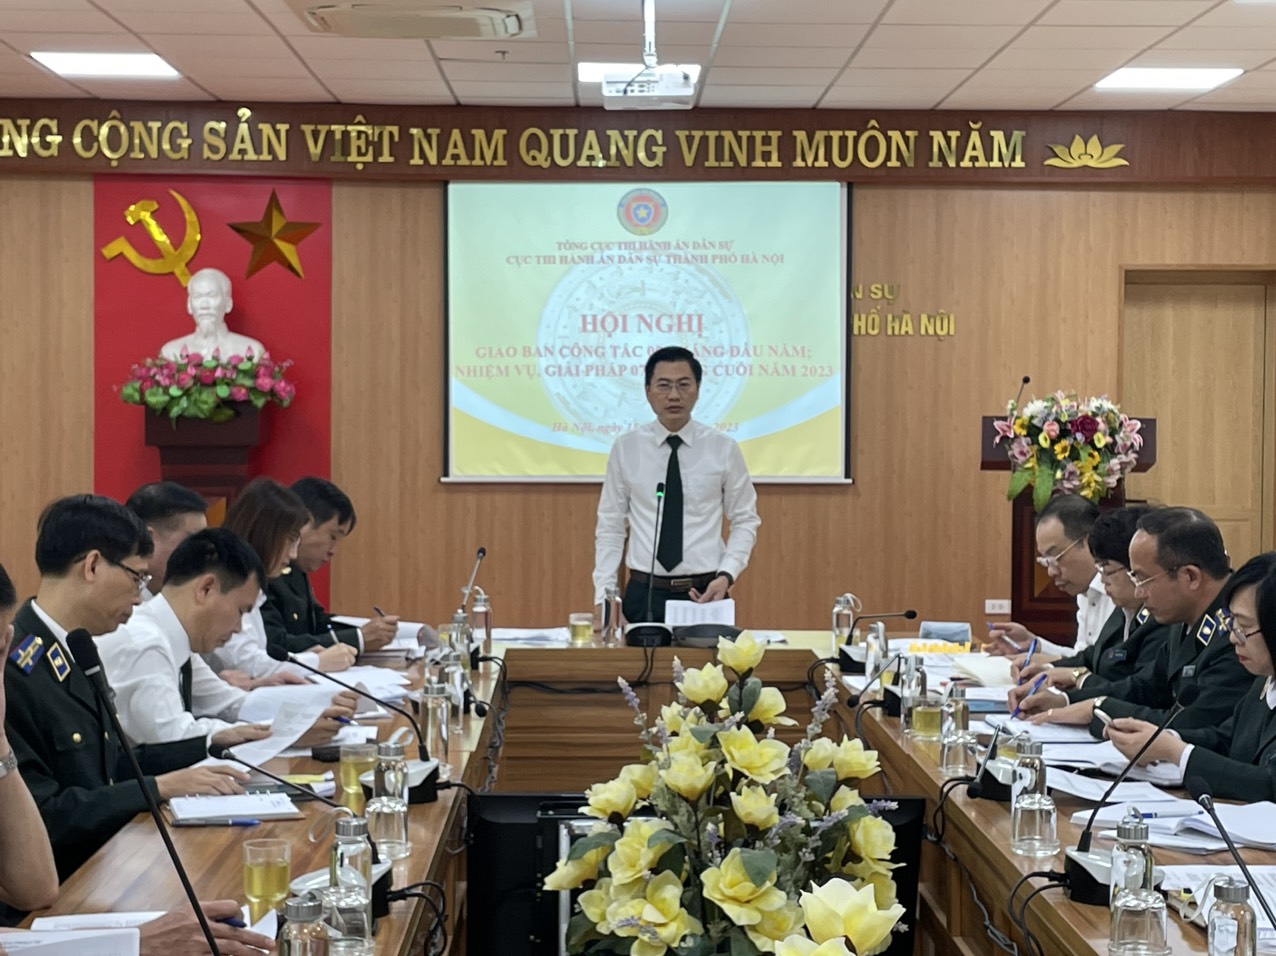 Cục Thi hành án dân sự thành phố Hà Nội tổ chức Hội nghị giao ban công tác 05 tháng đầu năm 2023 và nhiệm vụ, giải pháp 07 tháng cuối năm 2023